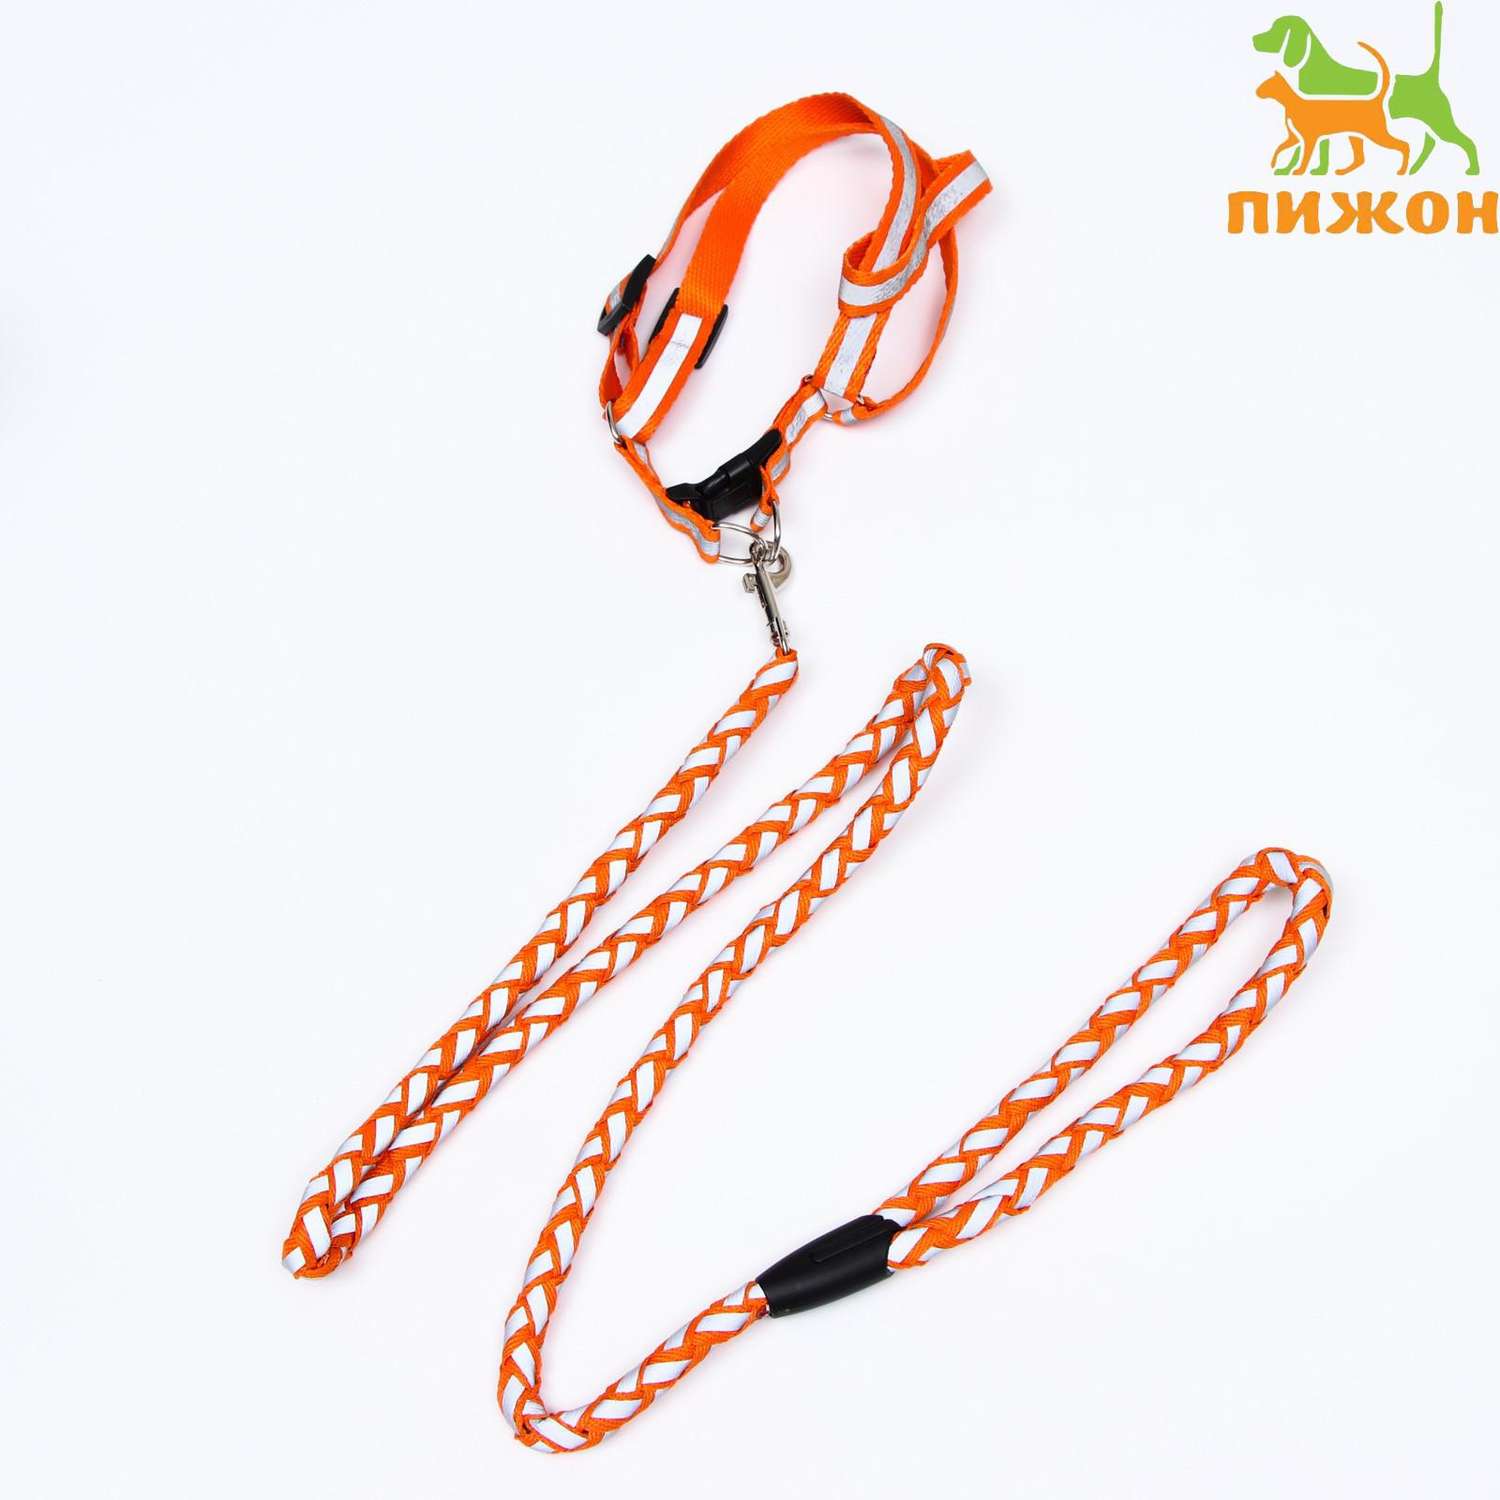 Комплект для собаки Пижон «Плетенка» флюорисцентный поводок 115 х 1 см и шлейка 32-48 см оранжевый - фото 2